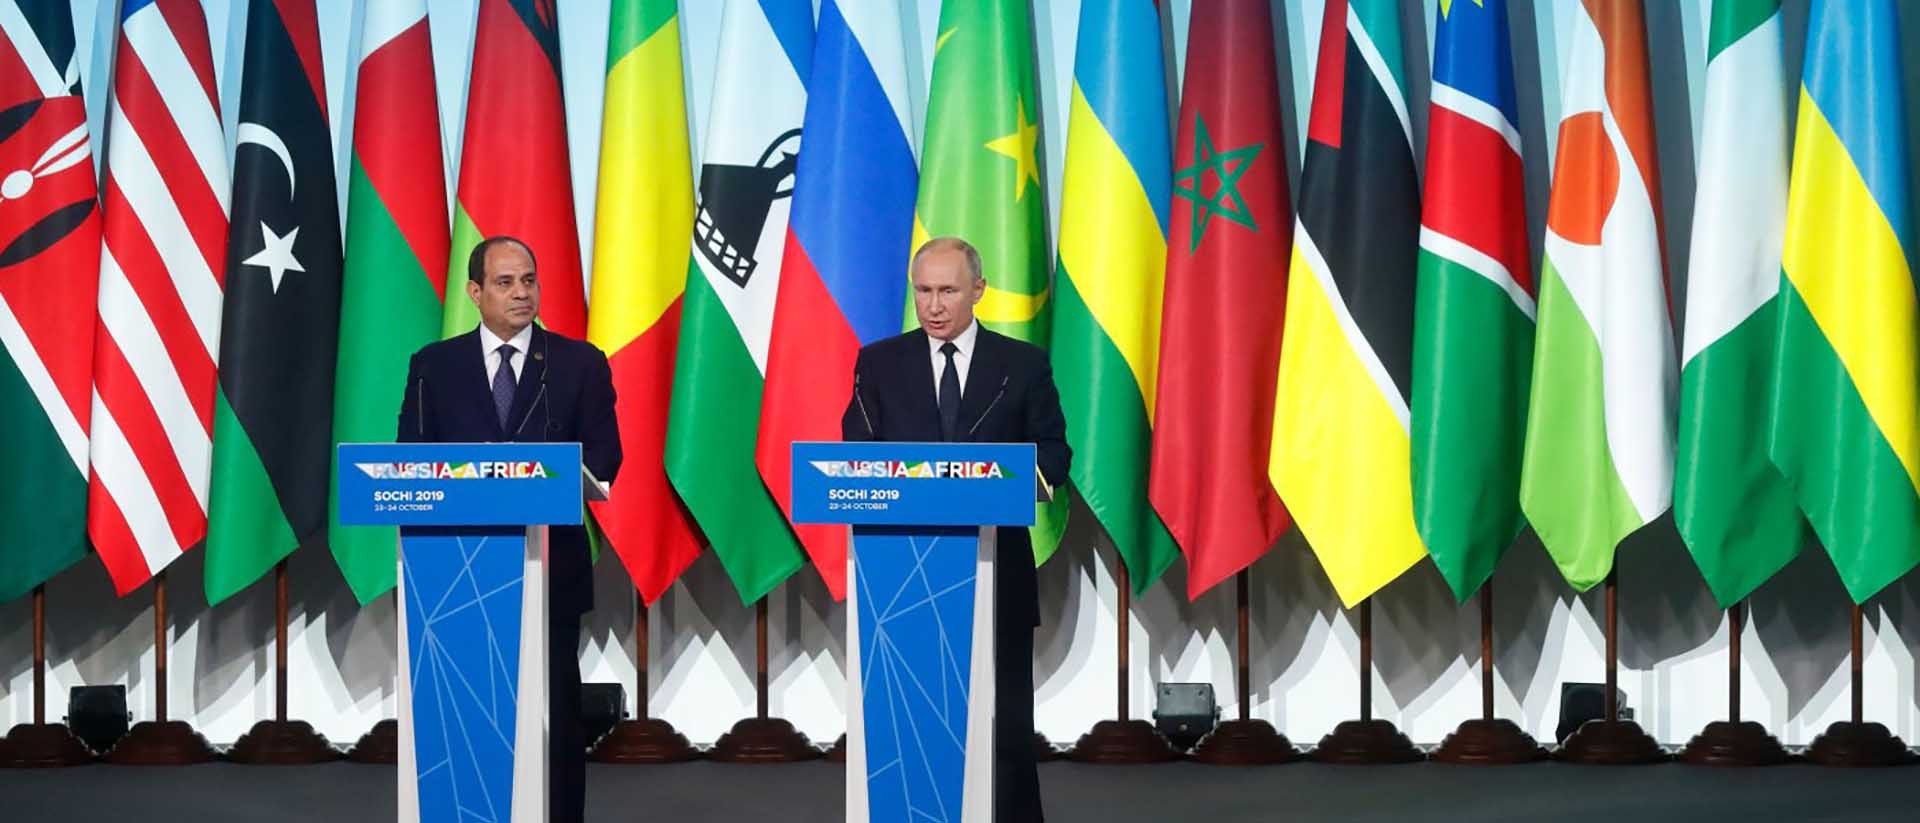 Tổng thống Nga Vladimir Putin (phải) và người đồng cấp Ai Cập Abdel Fattah el-Sisi tại Hội nghị thượng đỉnh Nga - châu Phi lần thứ nhất ở Sochi  năm 2019. (Nguồn: AFP/Getty Images)